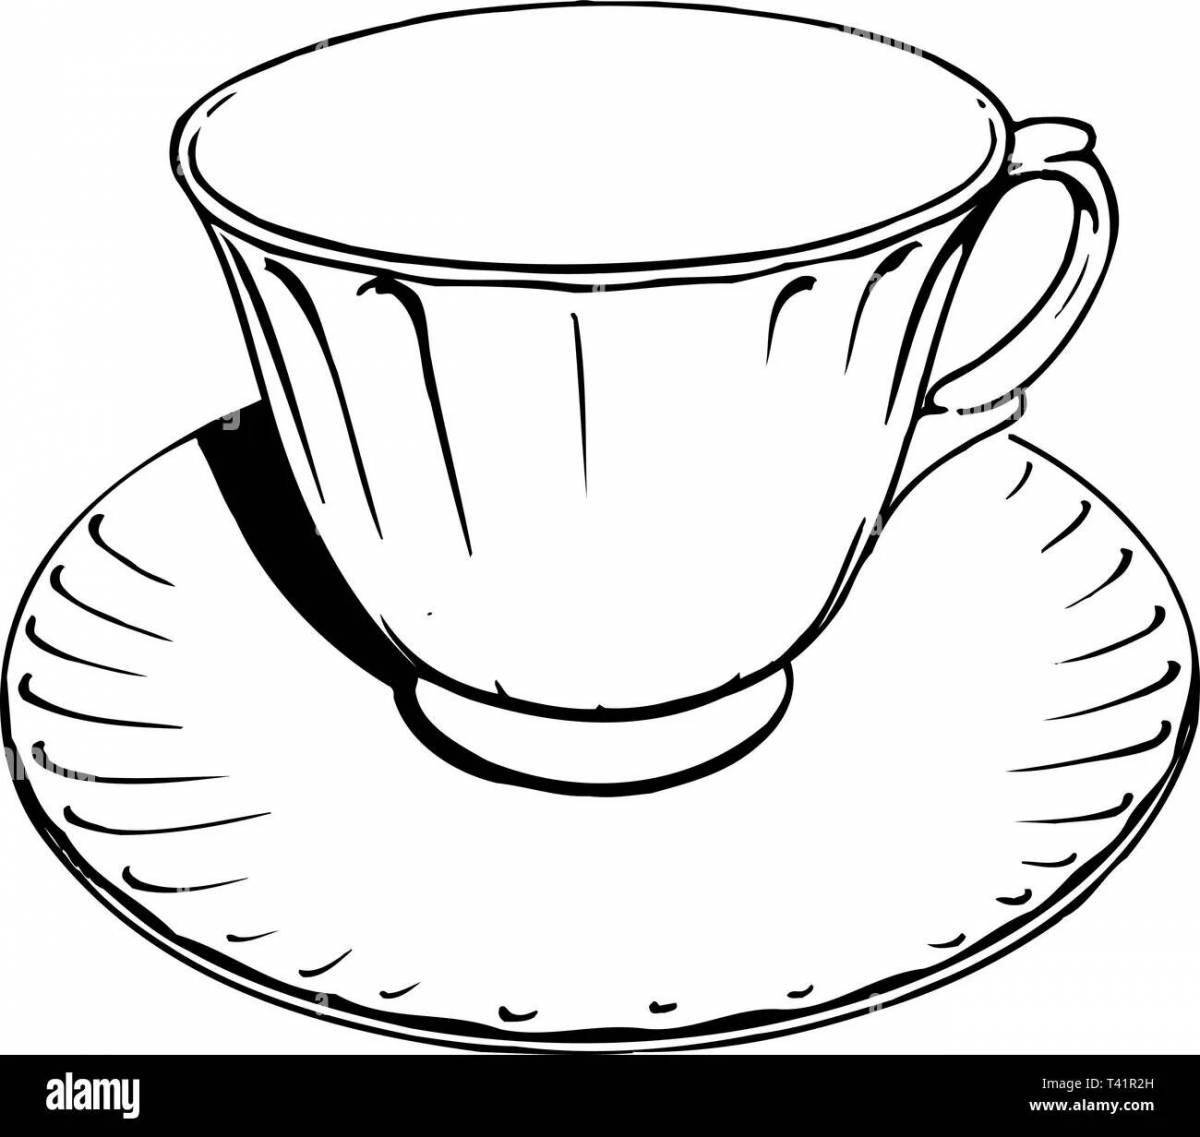 Выдающаяся страница раскраски чайной чашки для начинающих